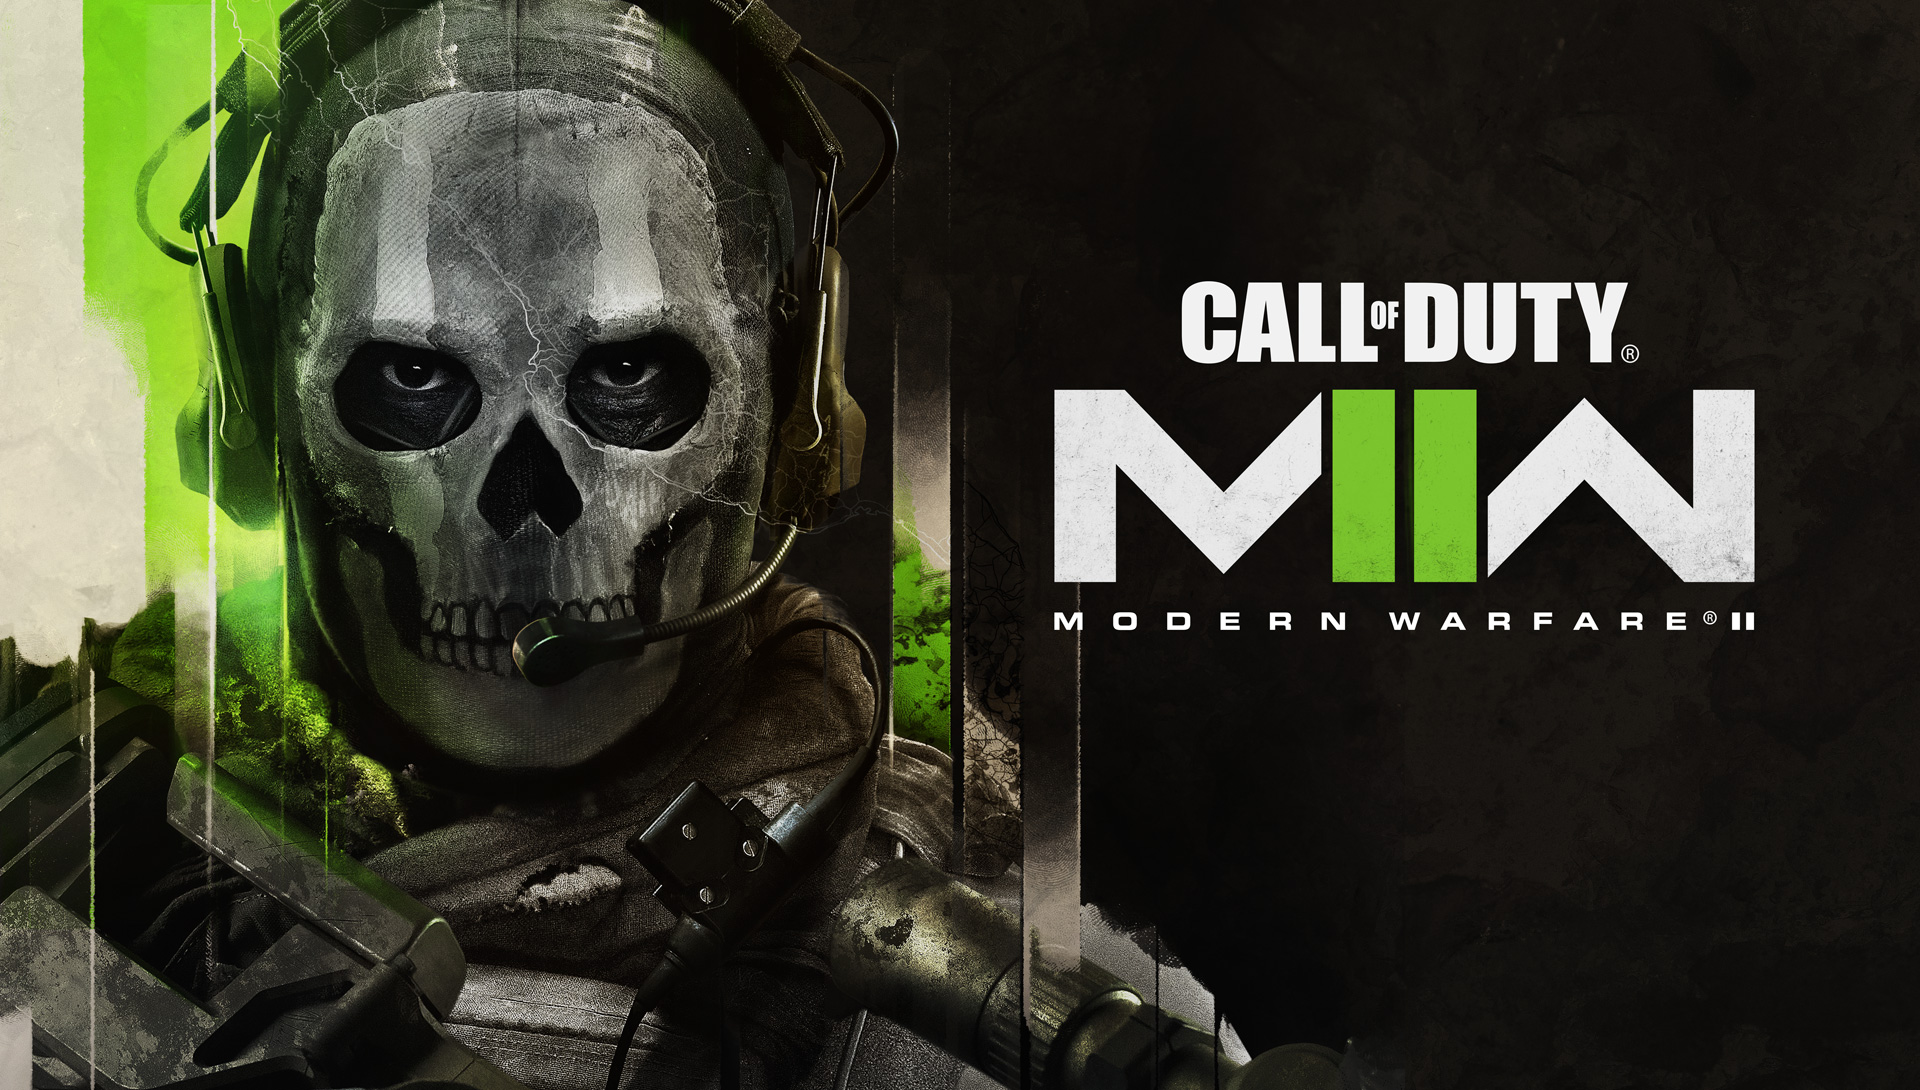 Похоже, режим "Заражения" станет доступен в Call of Duty: Modern Warfare 2 уже в феврале: с сайта NEWXBOXONE.RU